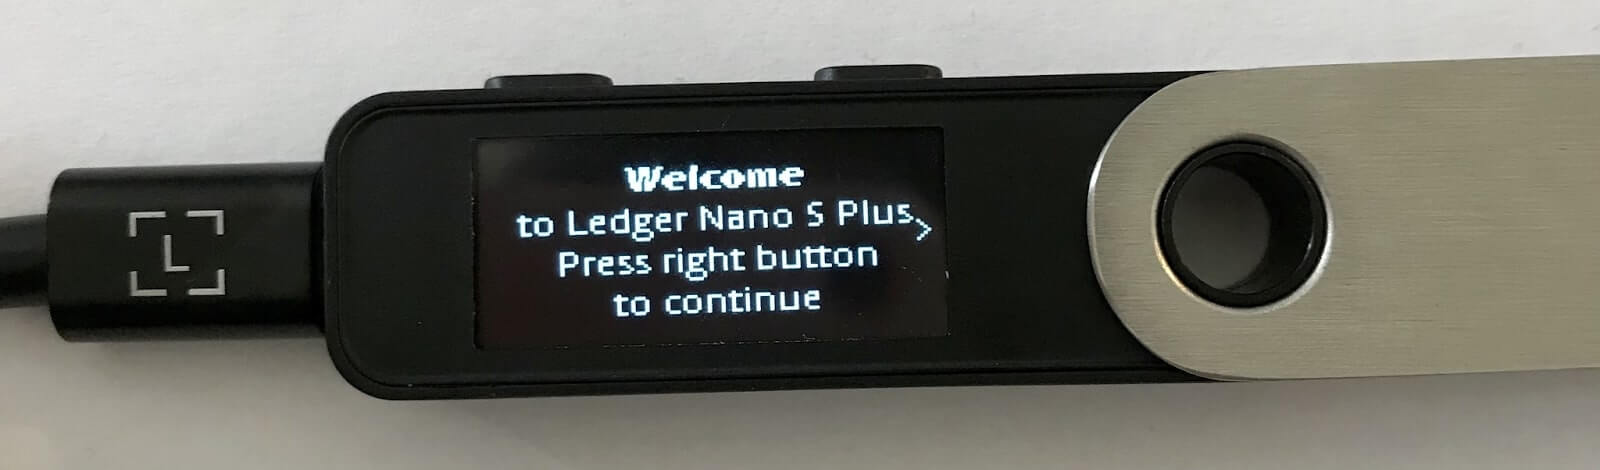 Tela inicial da Ledger Nano S Plus